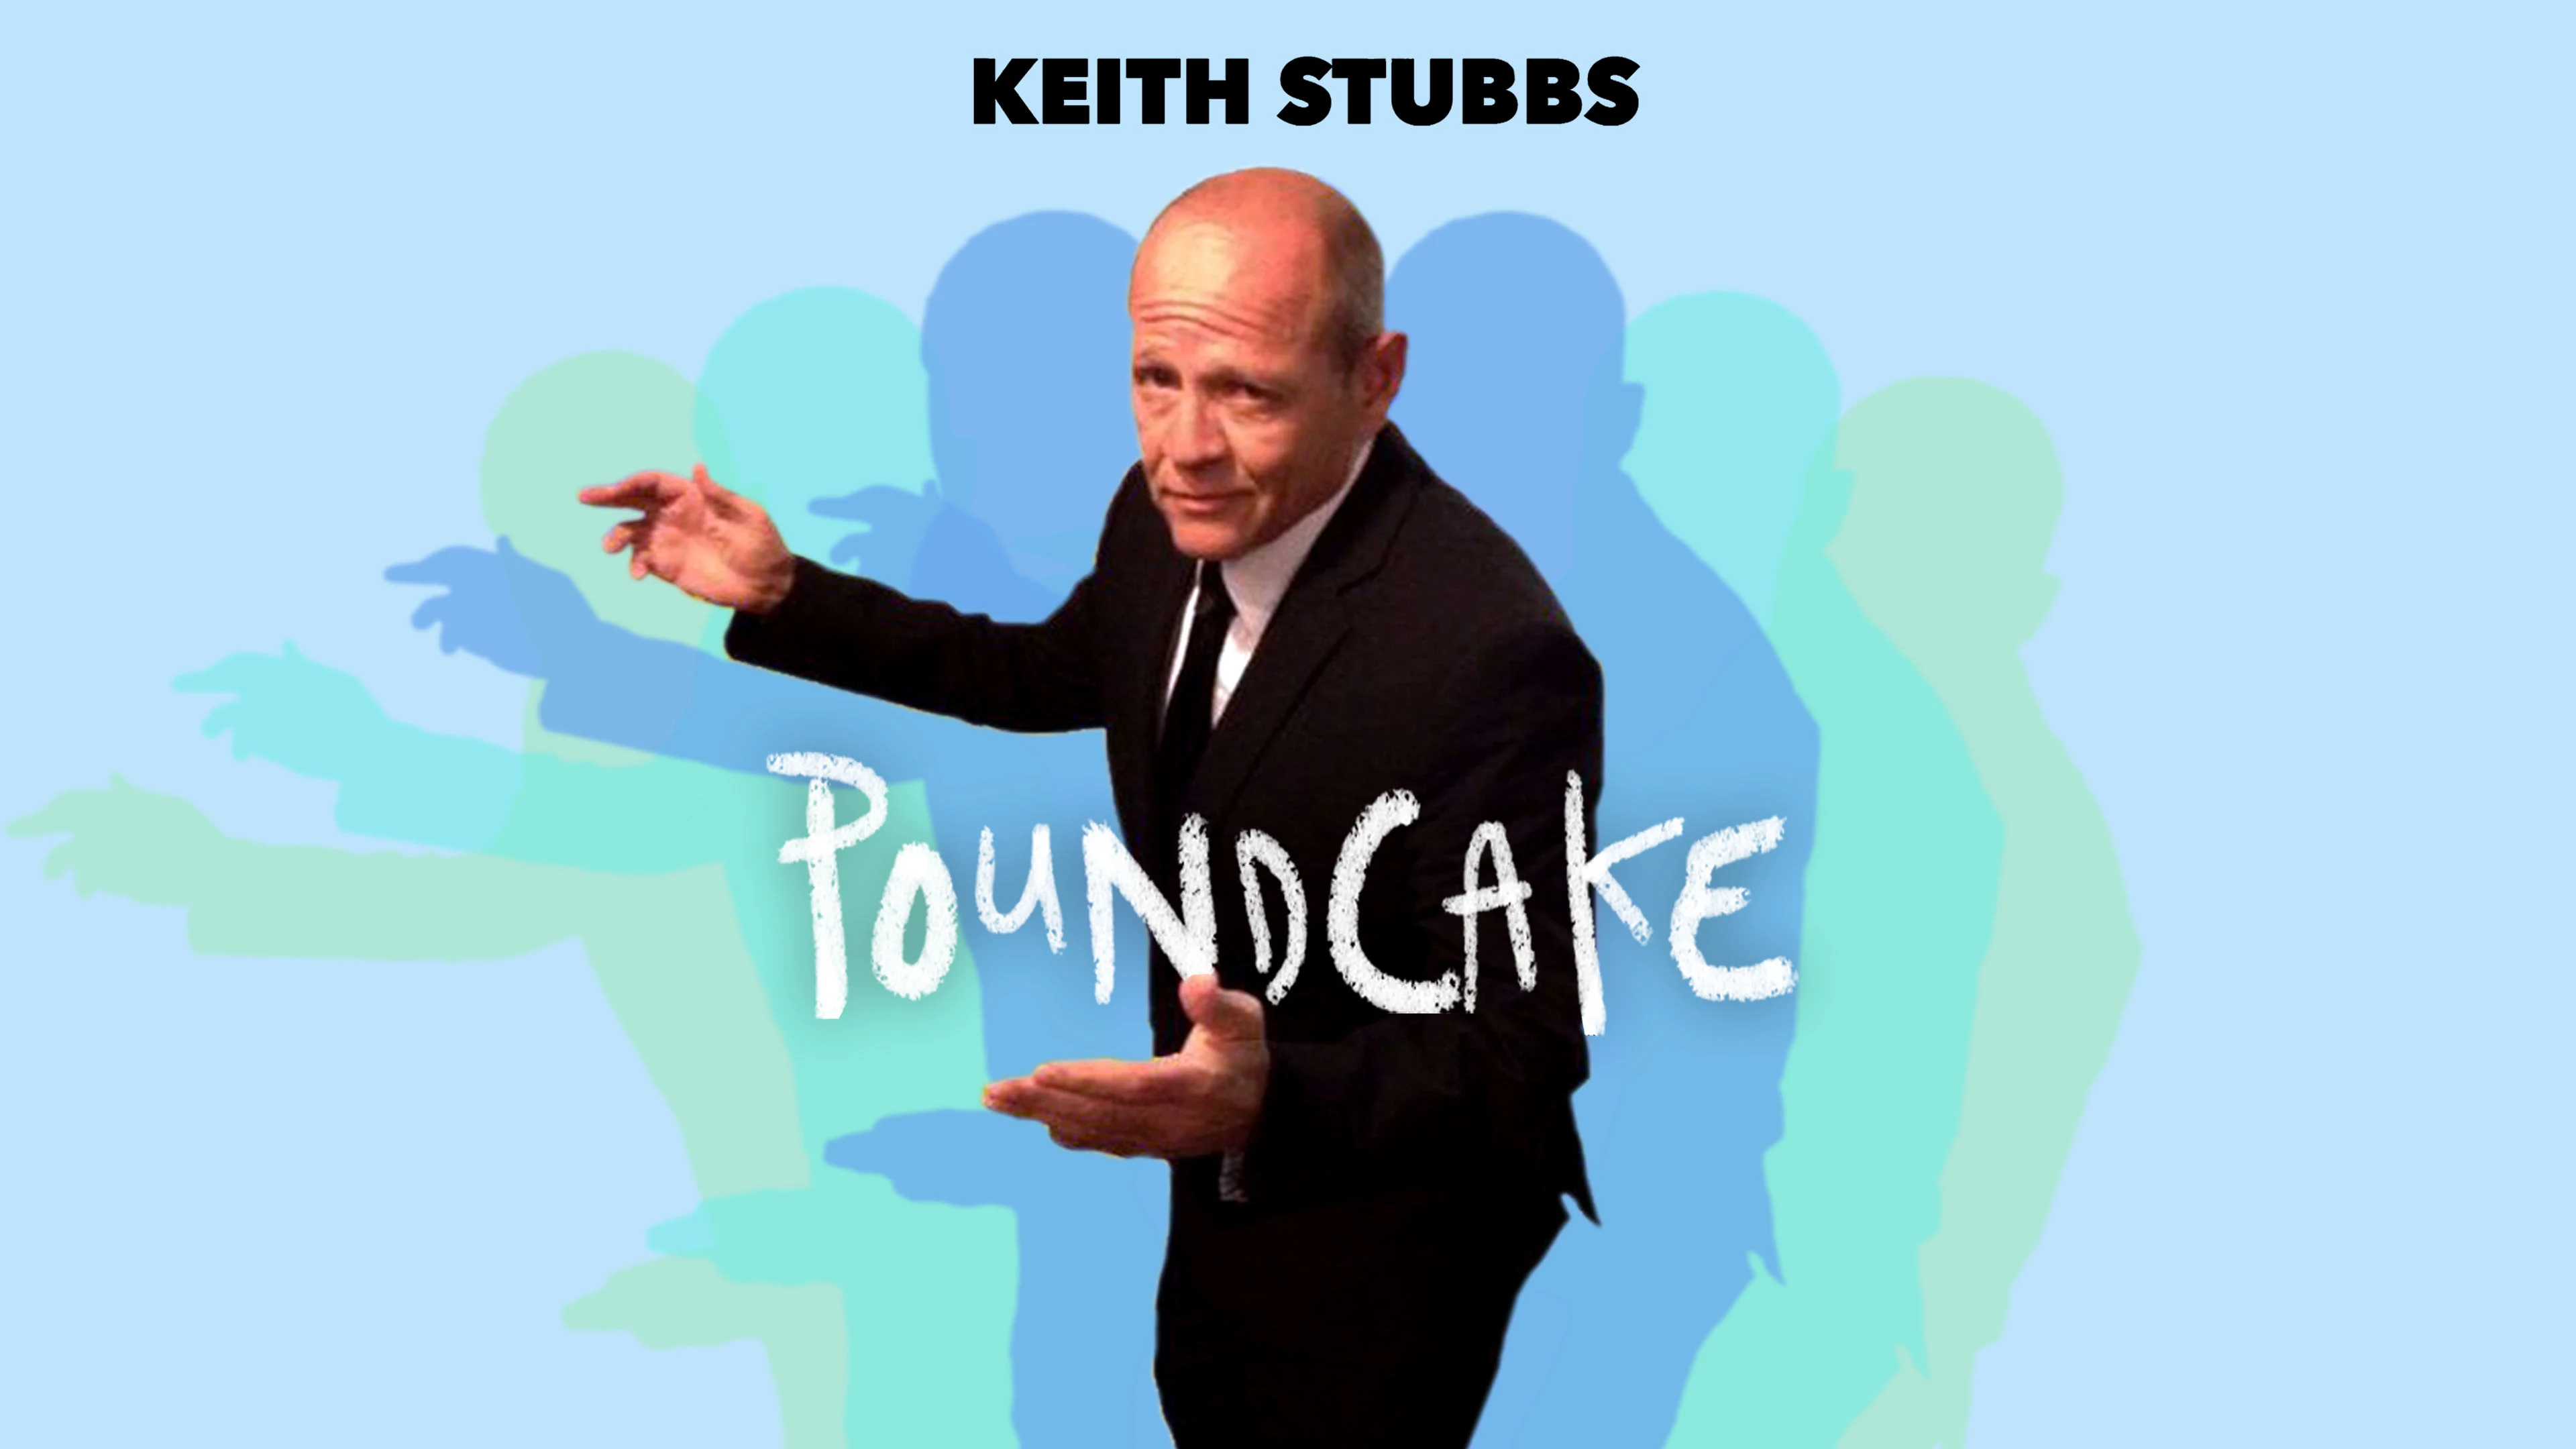 Keith Stubbs - Poundcake